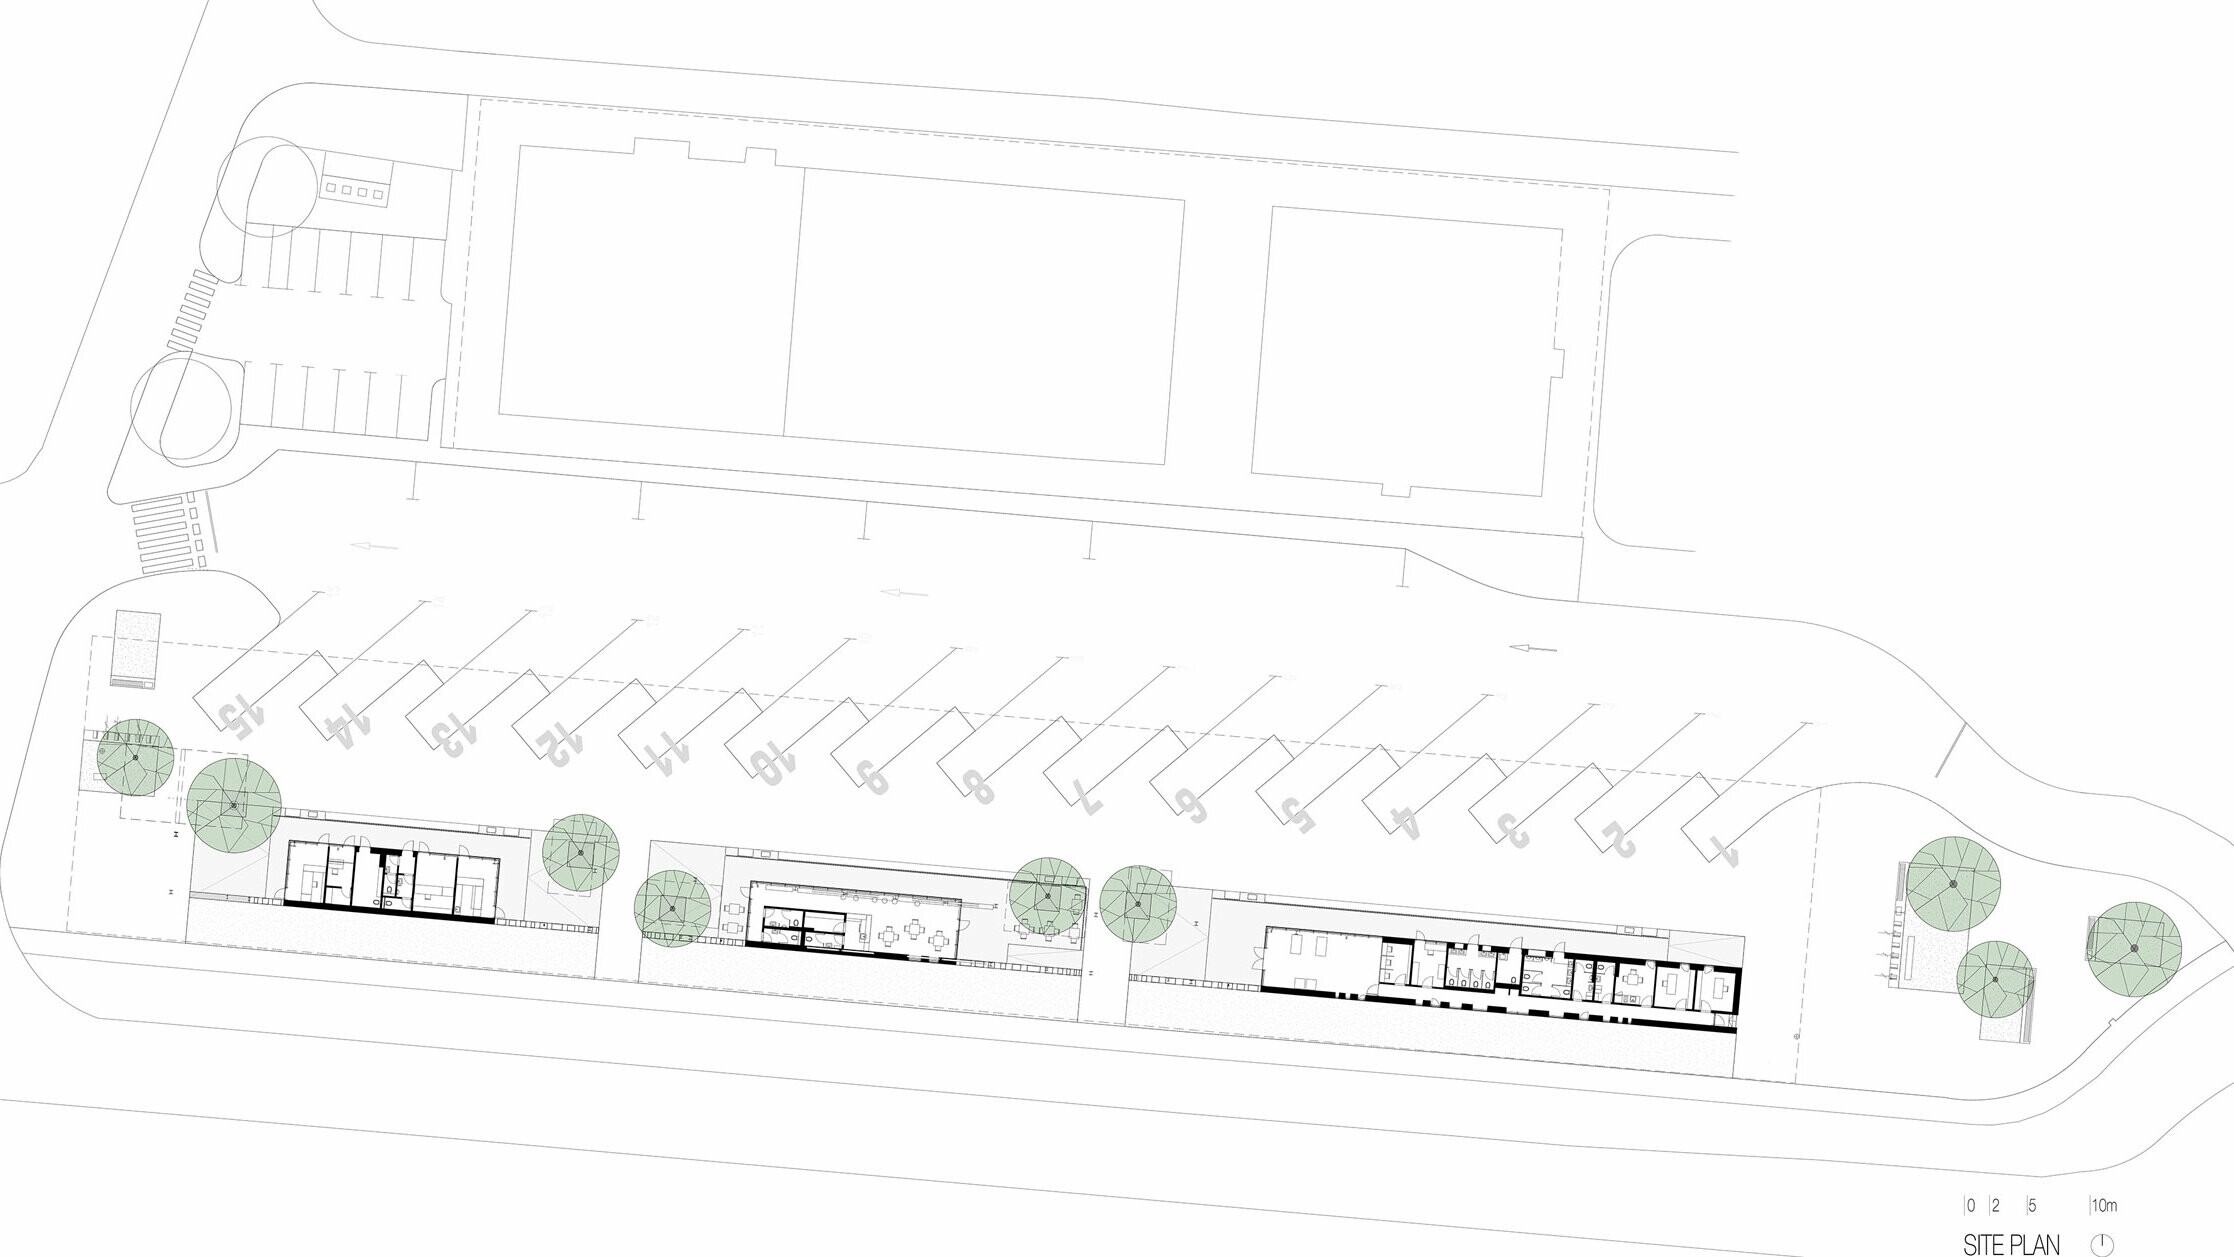 Mapa ukazuje přehled autobusové zastávky "Autobusni Kolodvor Slavonski Brod" v Chorvatsku. Výkres znázorňuje uspořádání autobusových nástupišť a parkovacích míst, jakož i budov a zelených ploch v místě. Uprostřed plánu můžete vidět nádražní budovy, přerušené několika stromy. Autobusová nástupiště jsou očíslována a uspořádána podél horní části plánu, zatímco parkovací místa jsou ve spodní části. Plán lokality poskytuje jasné znázornění celého zařízení a jeho konstrukčních prvků, včetně cest, parkovacích ploch a terénních úprav.